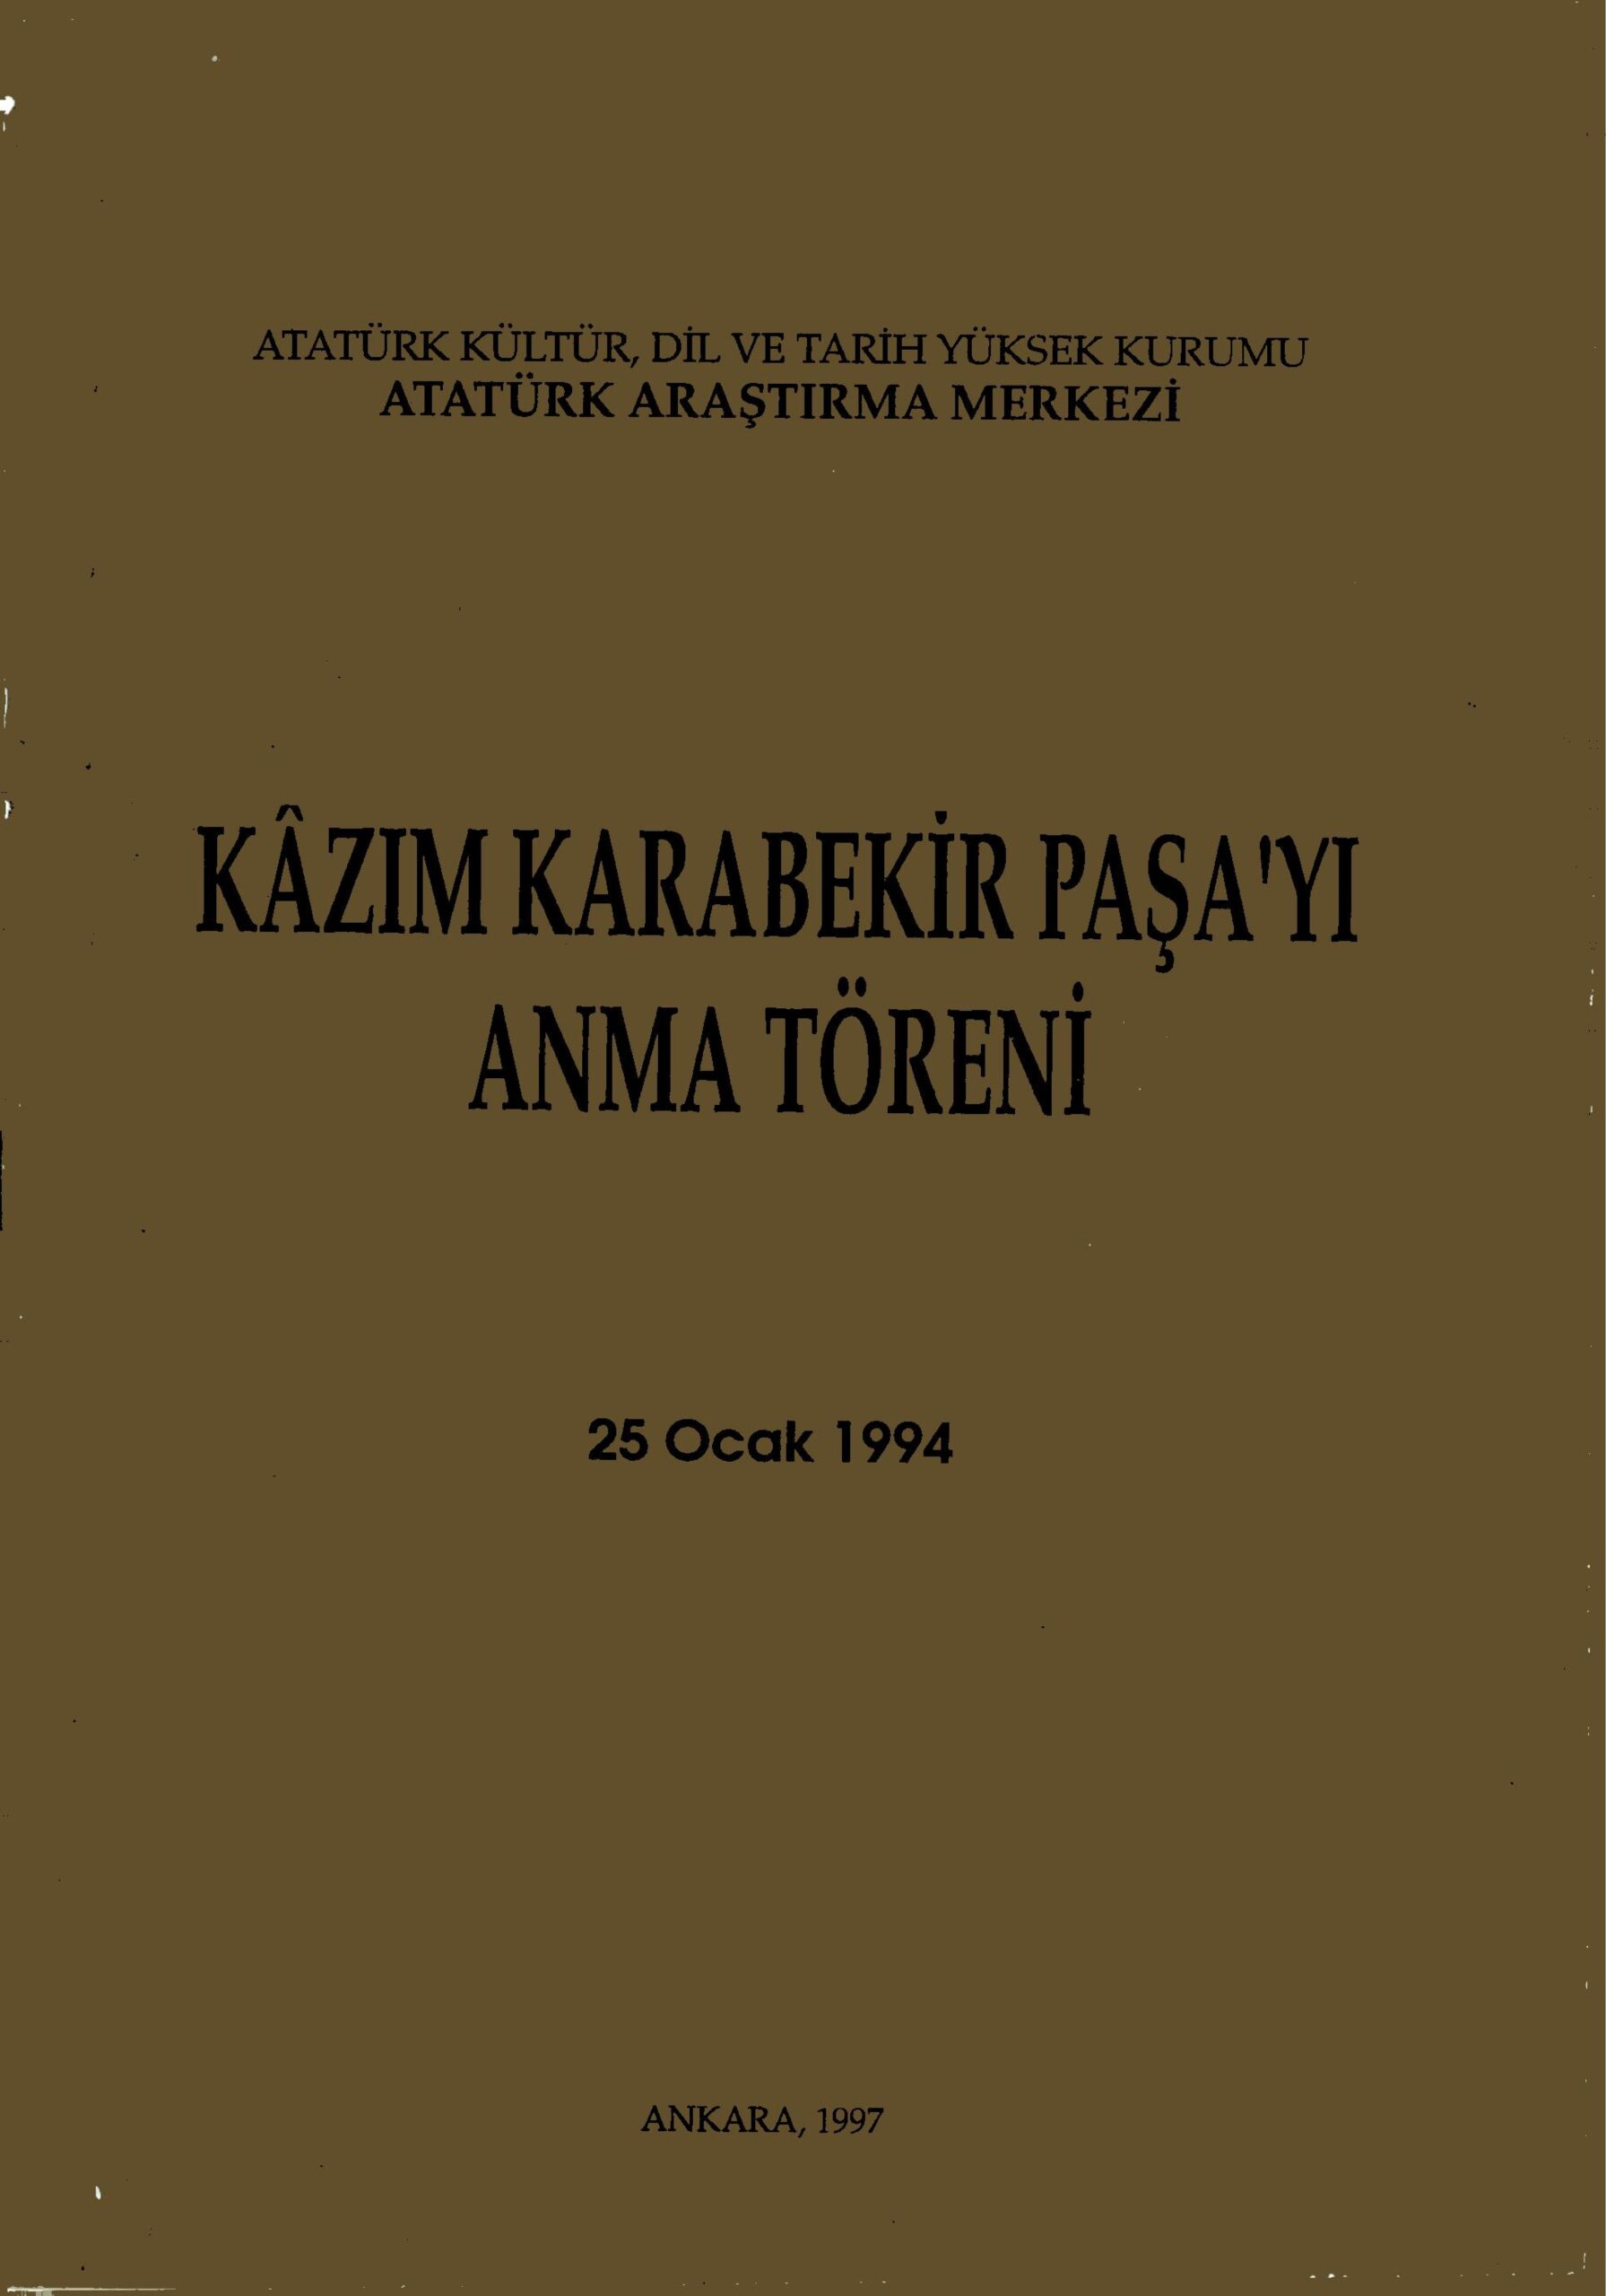 Kazım Karabekir Paşa’yı Anma Töreni (25 Ocak 1994)